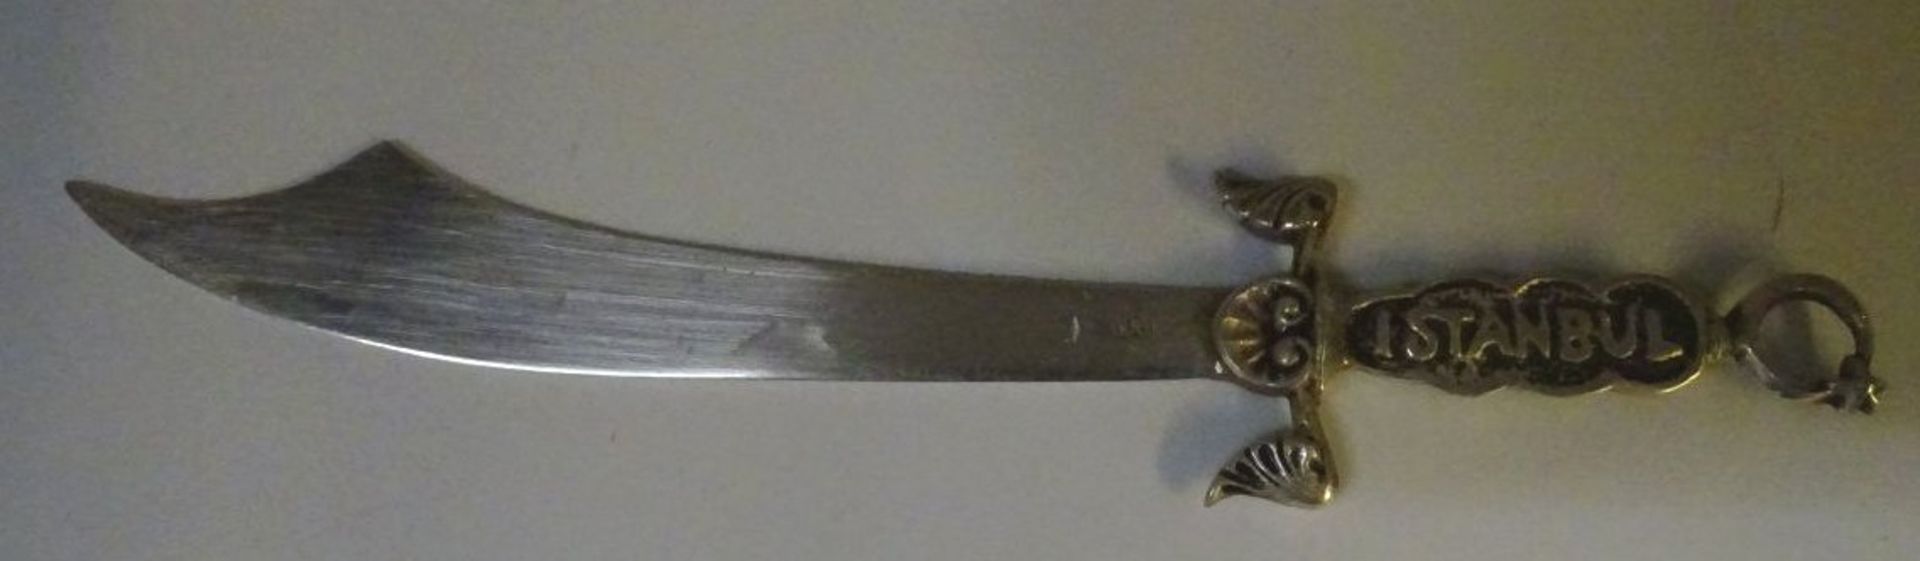 Silber-800- Brieföffner in Säbelform, L-16 cm, 23 gramm Griff "Istanbul" beschriftet